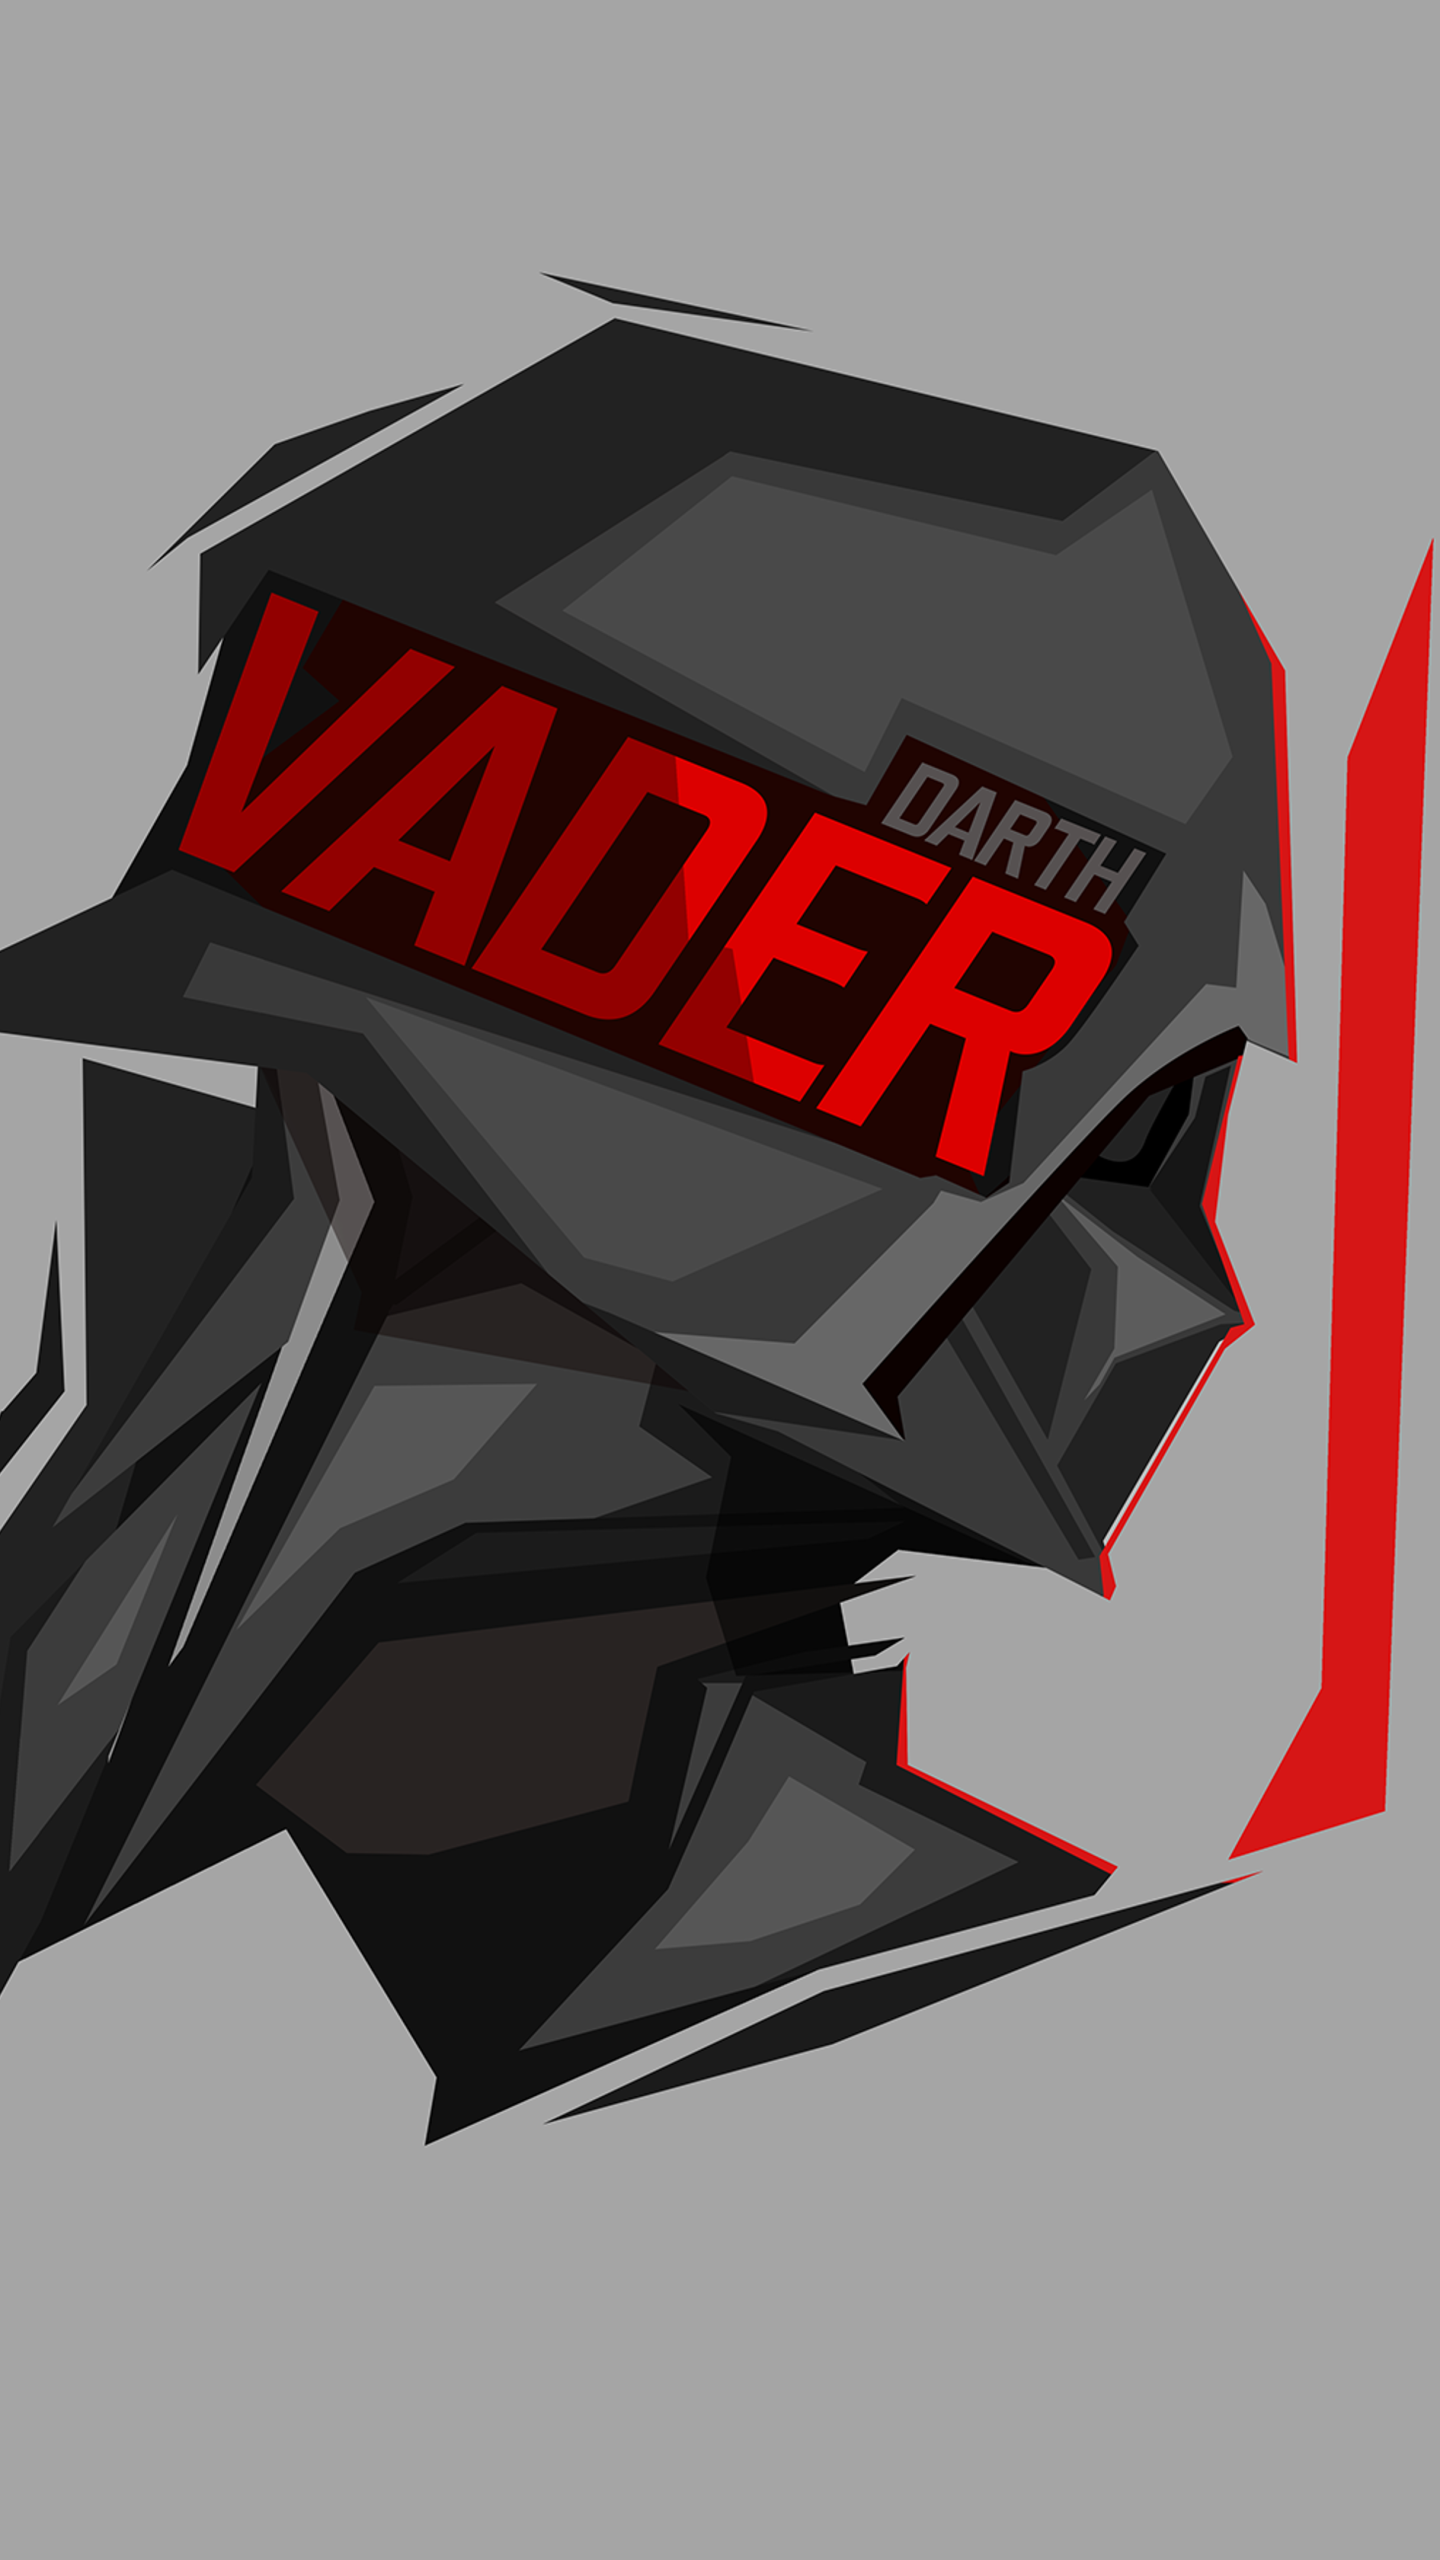 Darth Vader by BossLogic